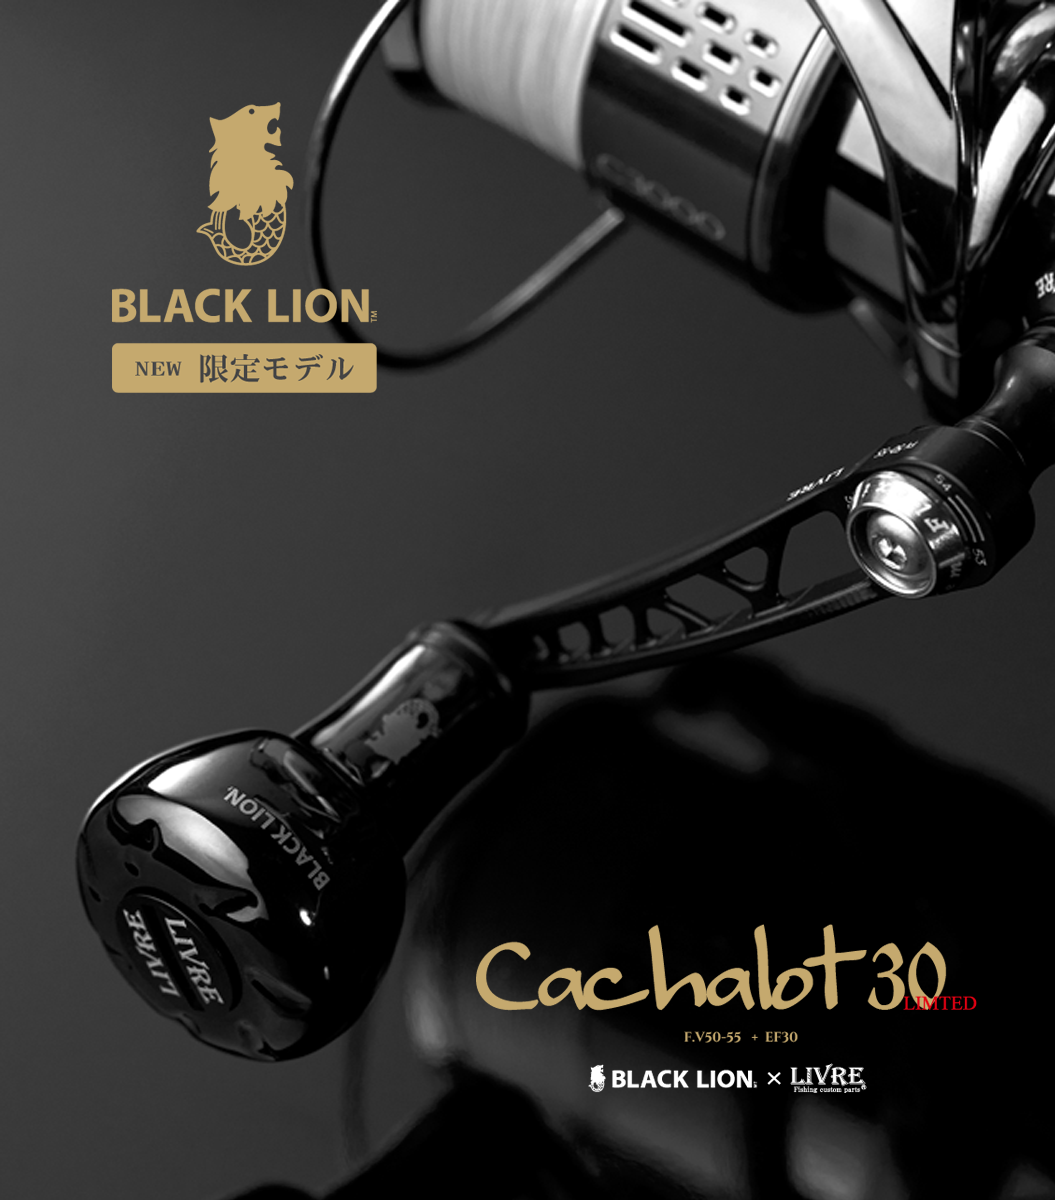 キャシャロット30 Web限定販売 Blacklion ブラックライオン 公式サイト エギング ティップラン イカメタル